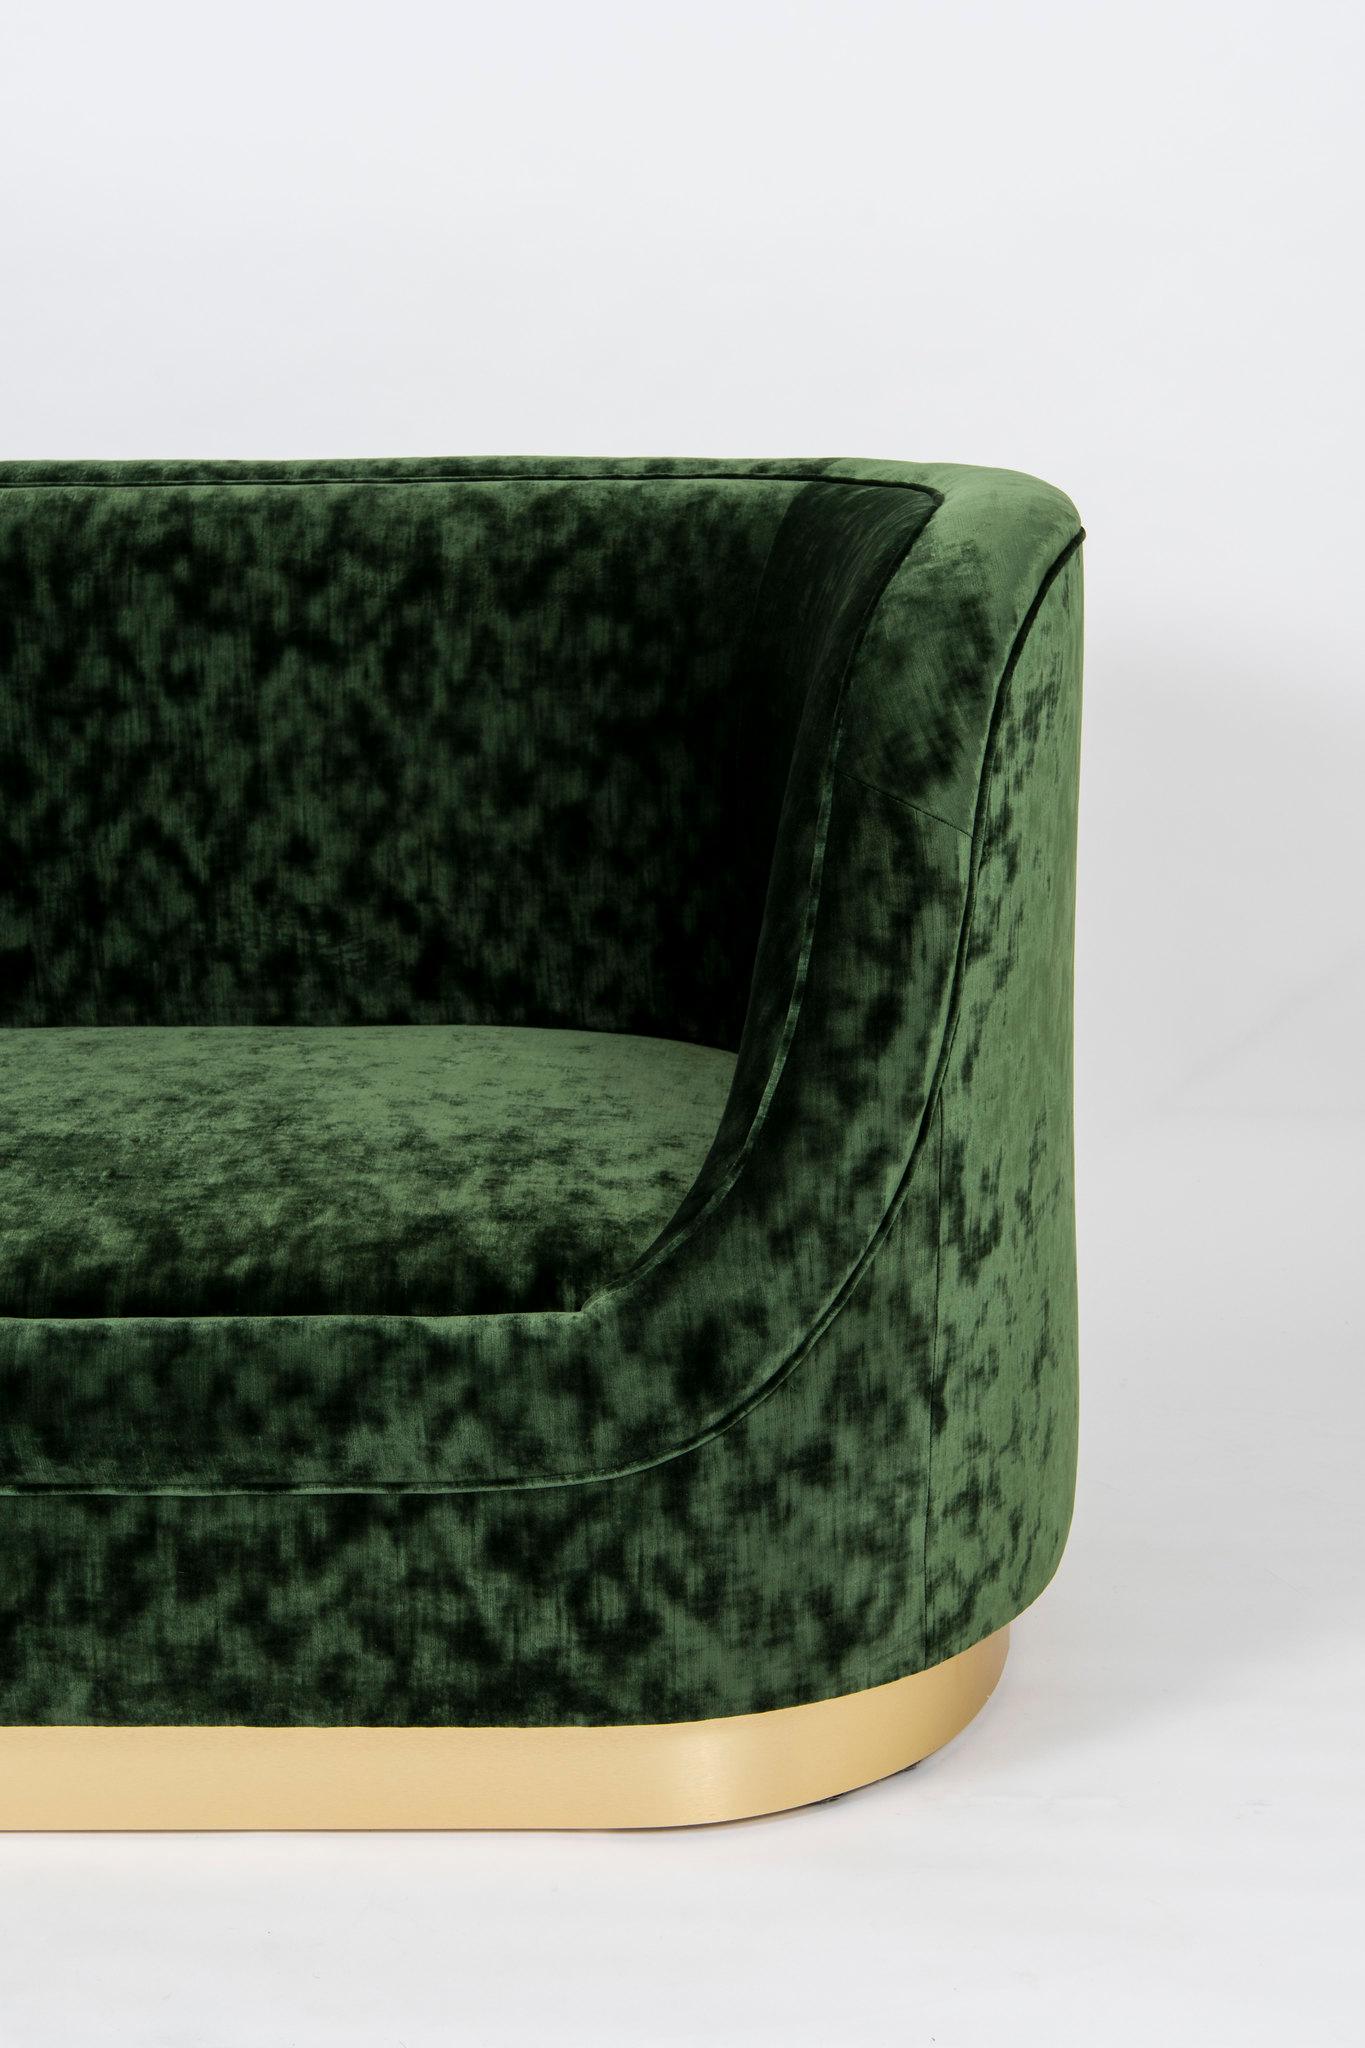 American Curved Green Velvet Sofa